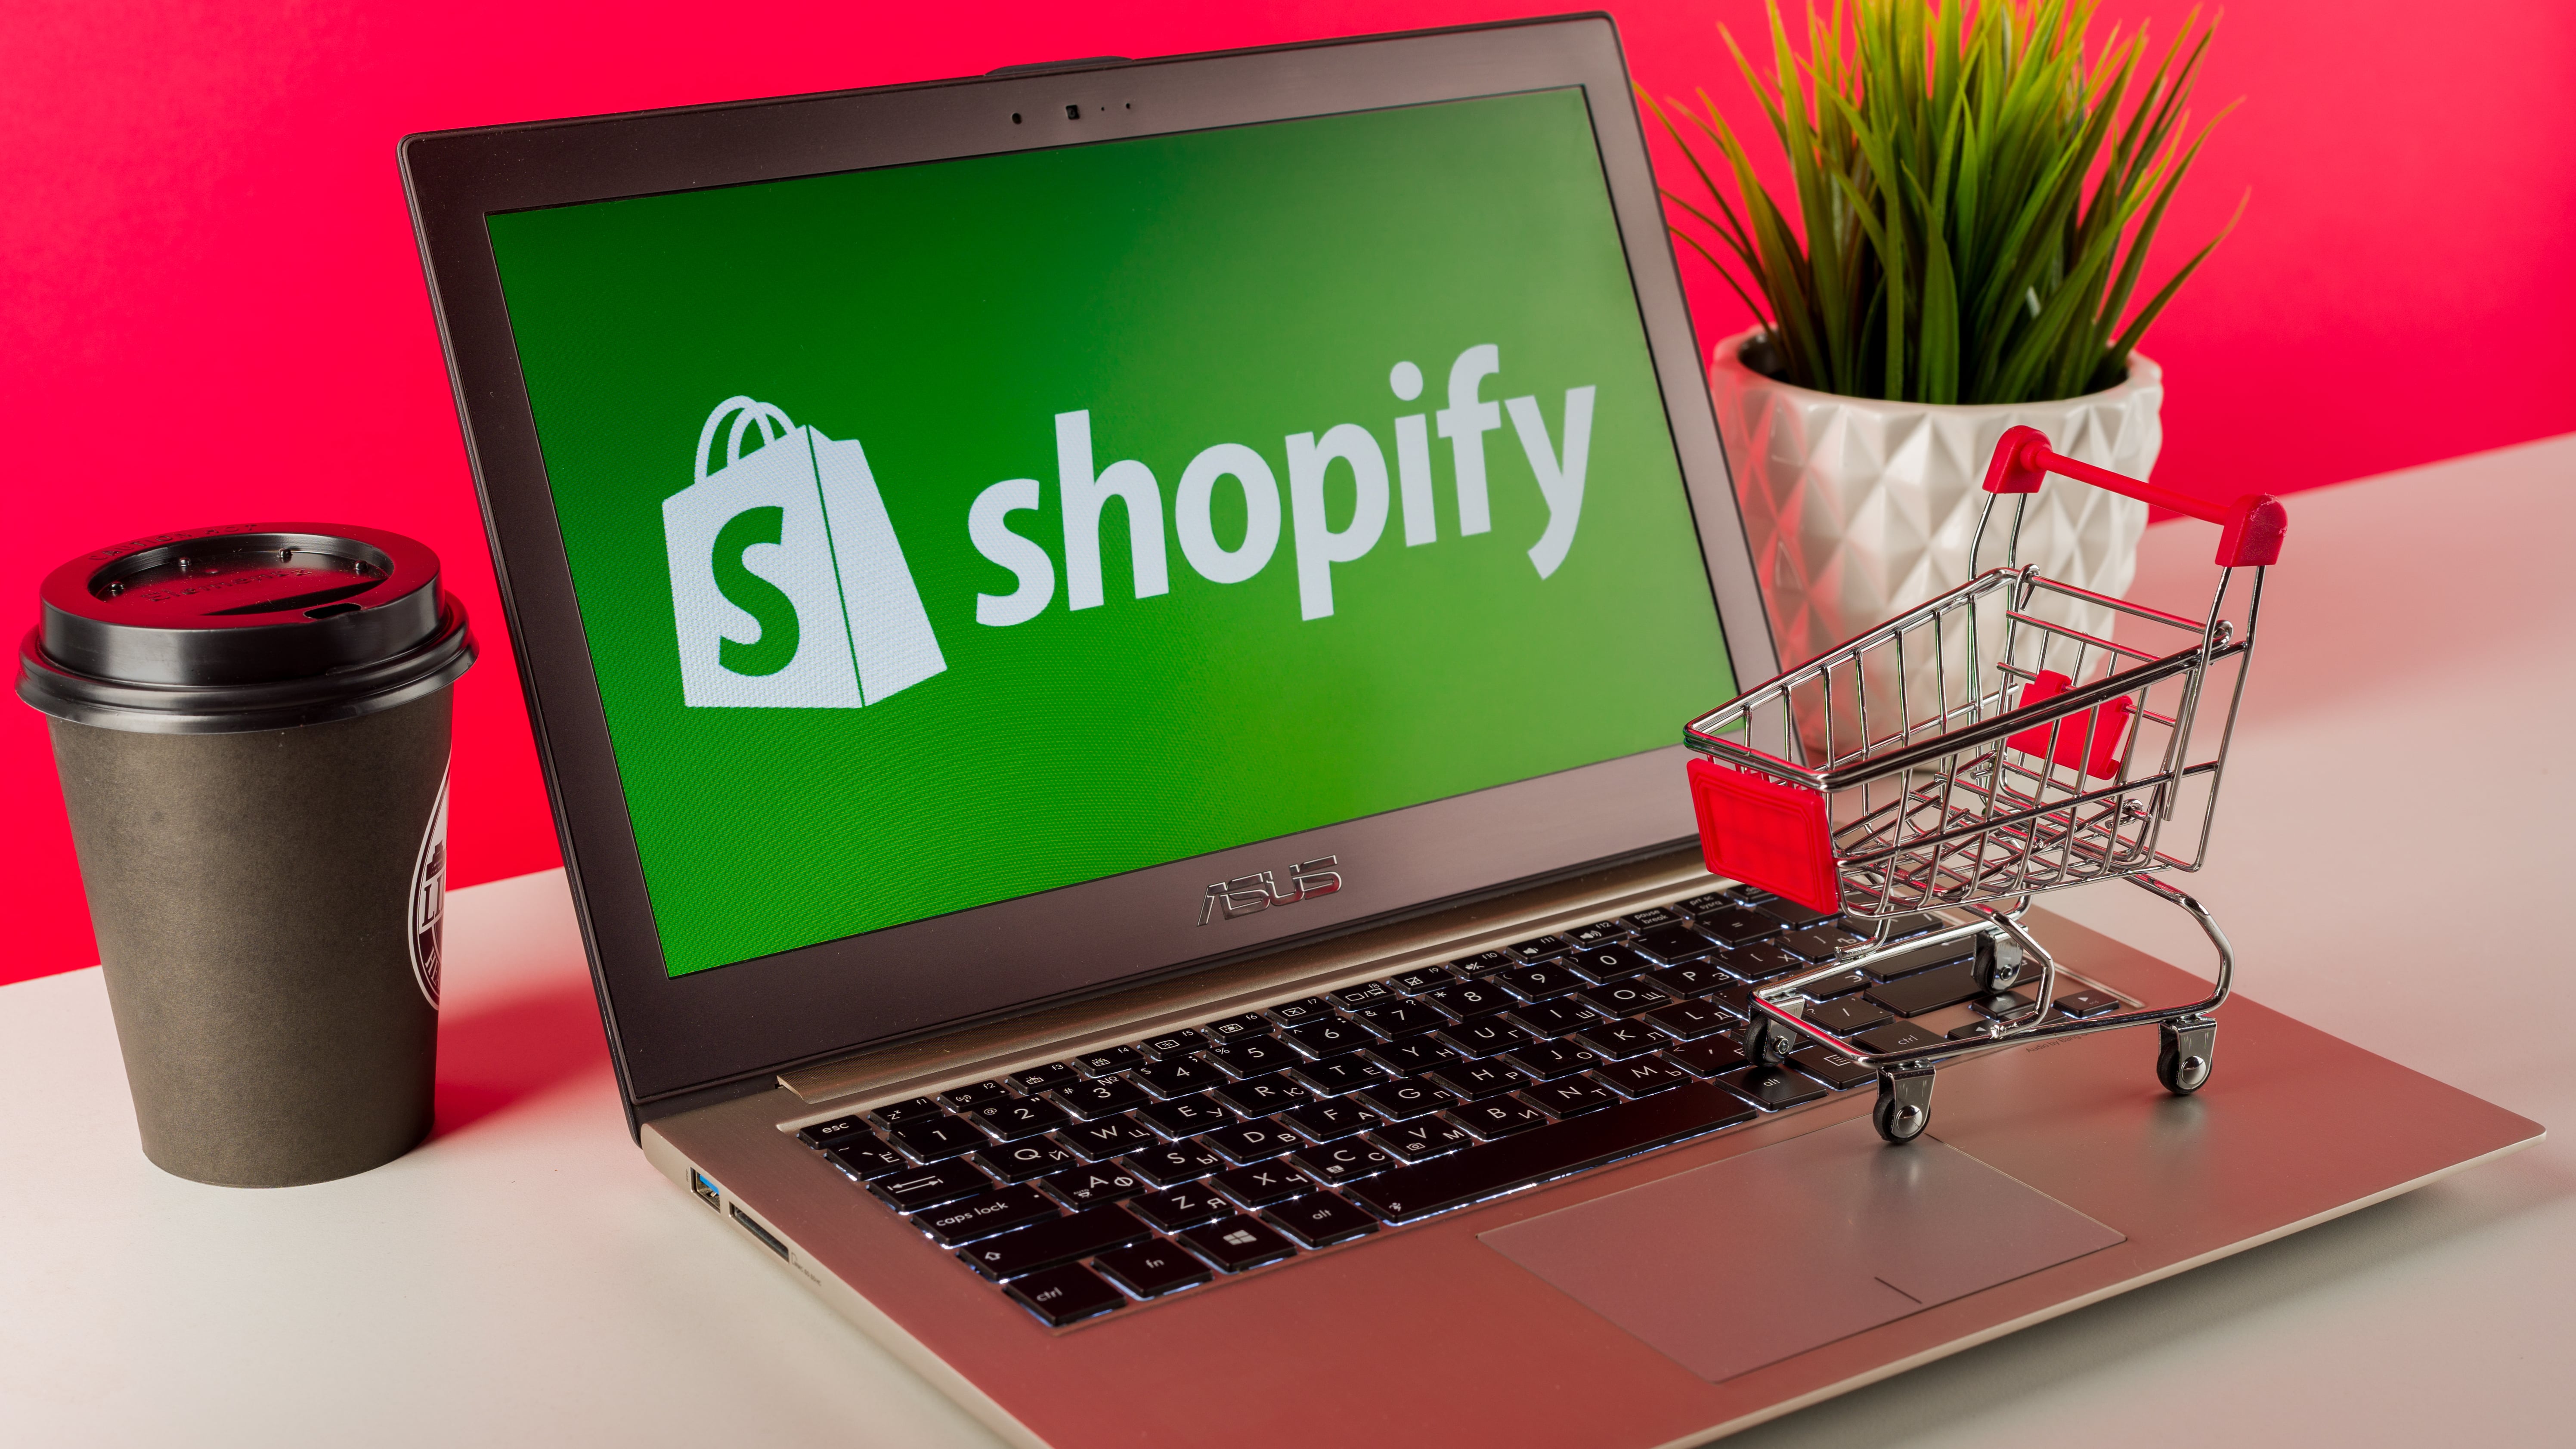 Logo Shopify ditampilkan pada laptop modern di atas meja dengan keranjang